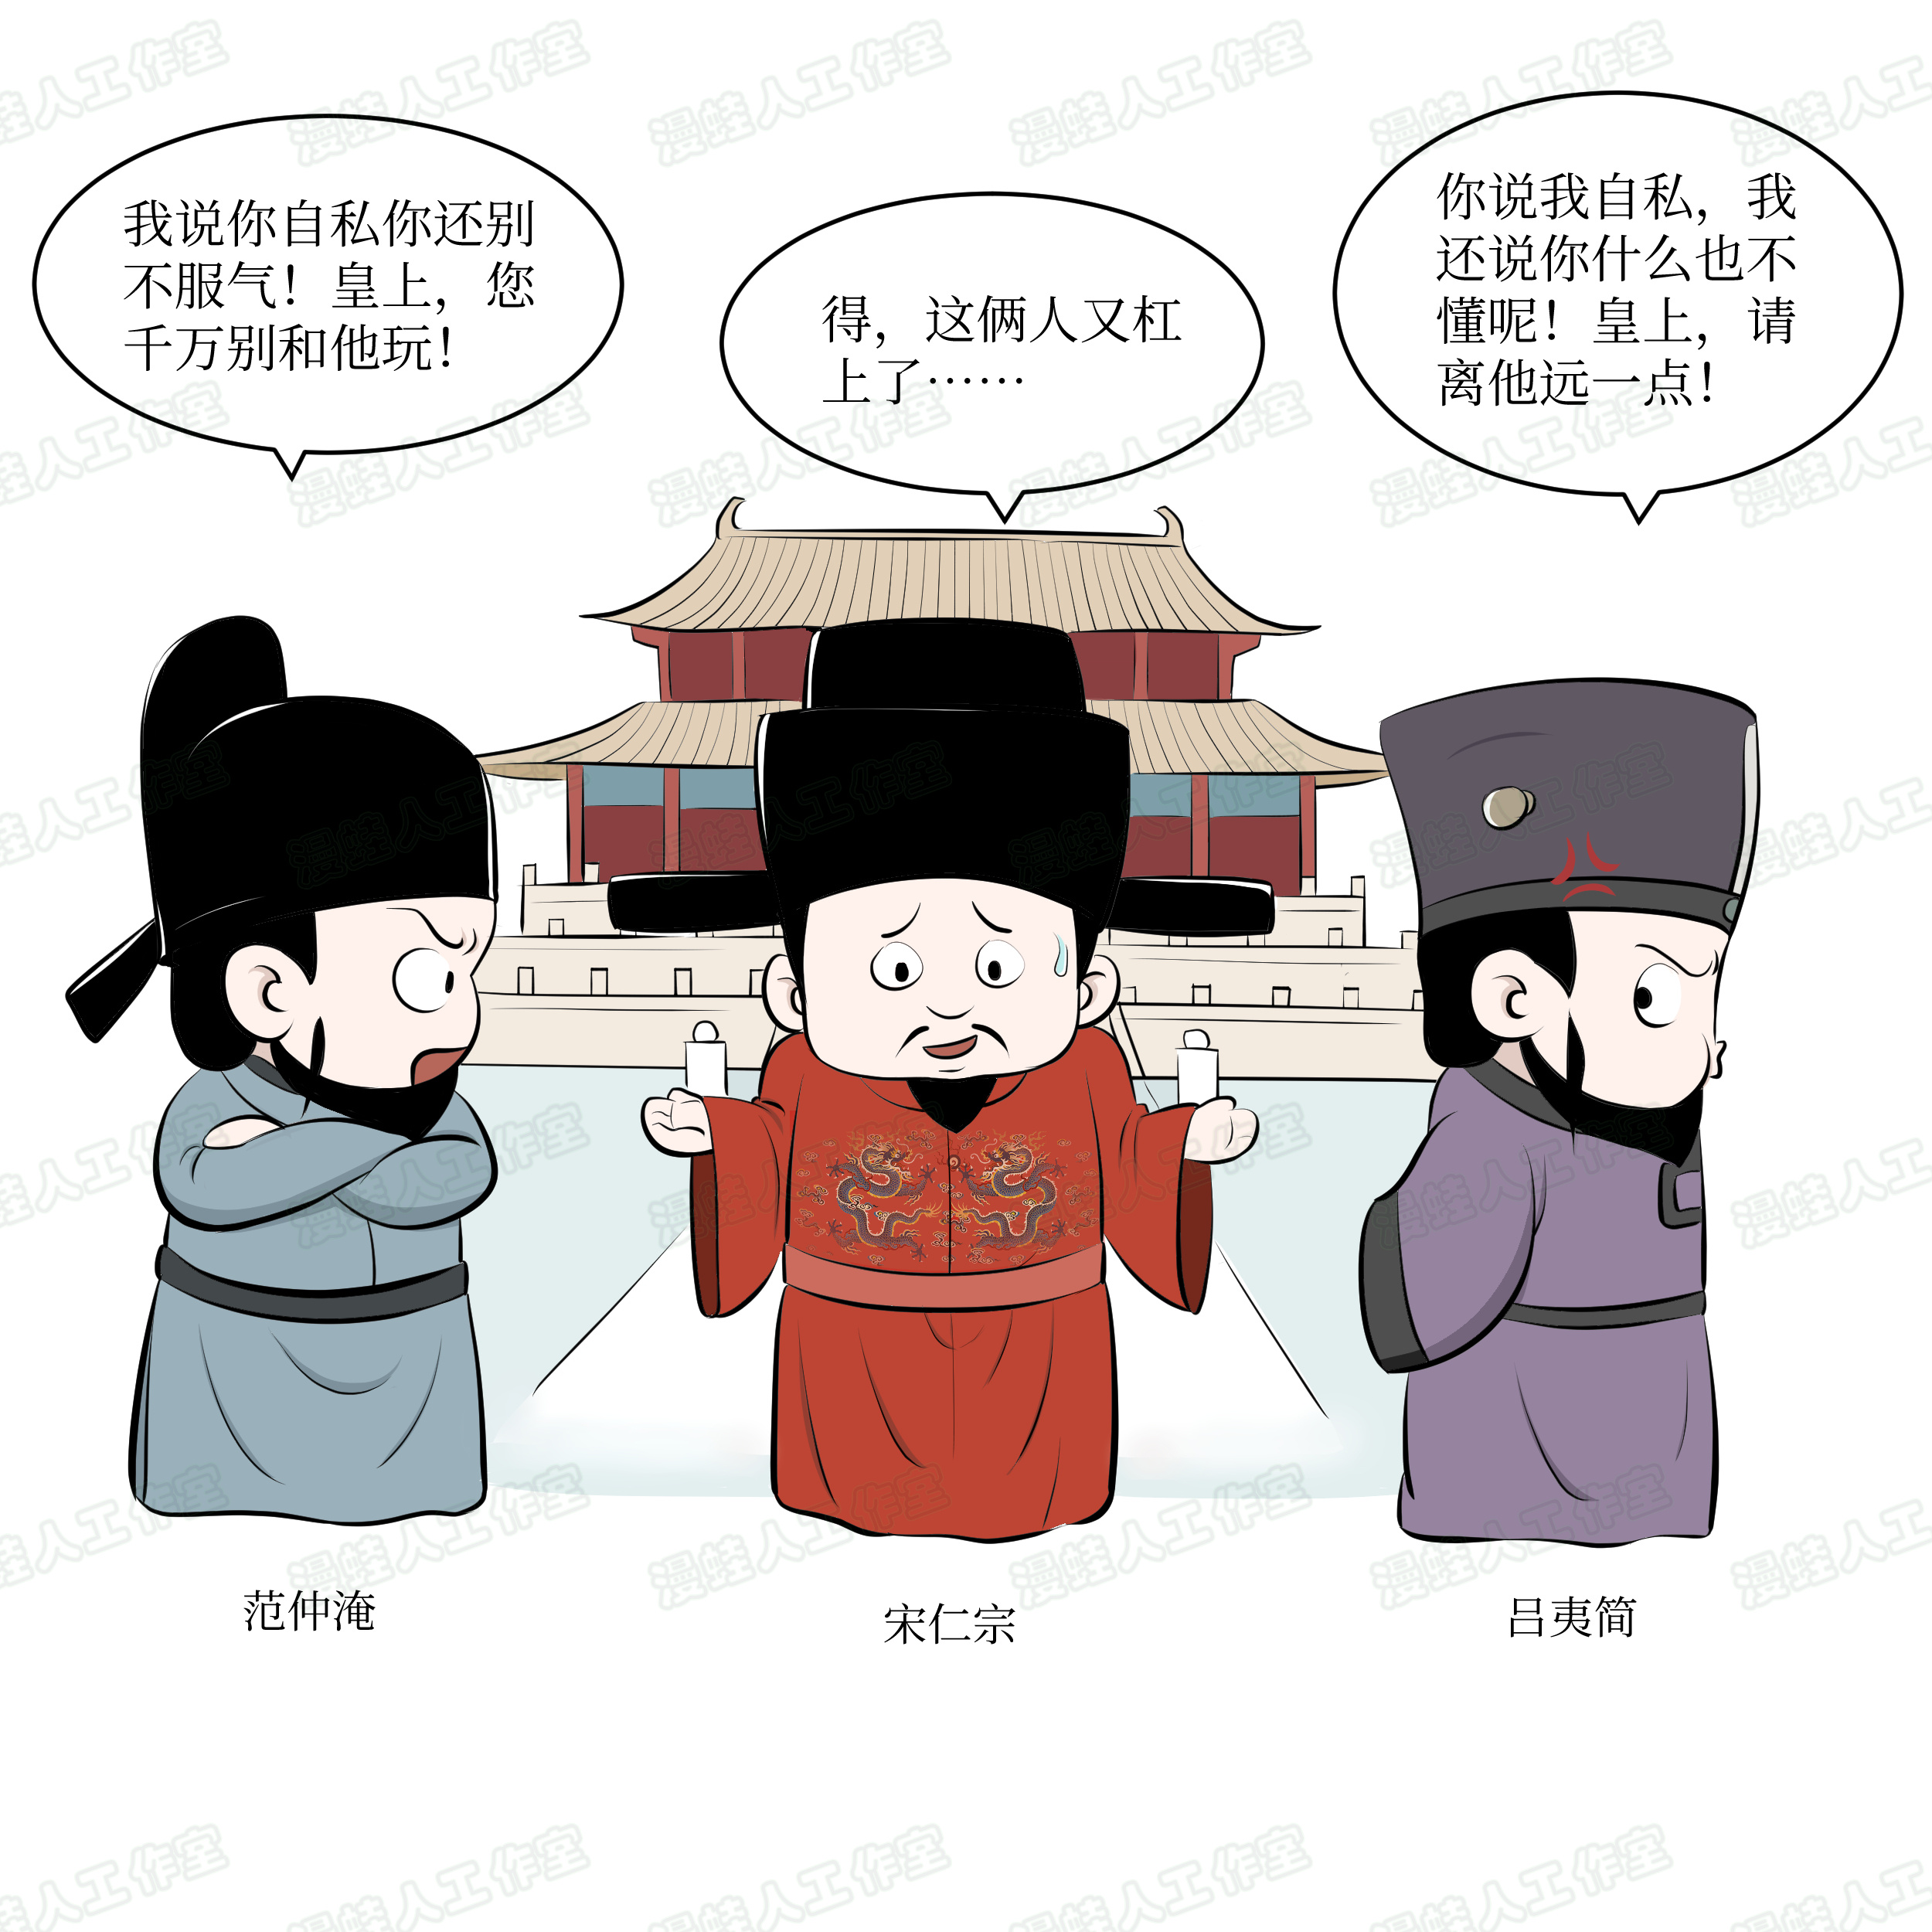 蔡志忠 《史记》｜ 很酷的历史漫画 - 知乎